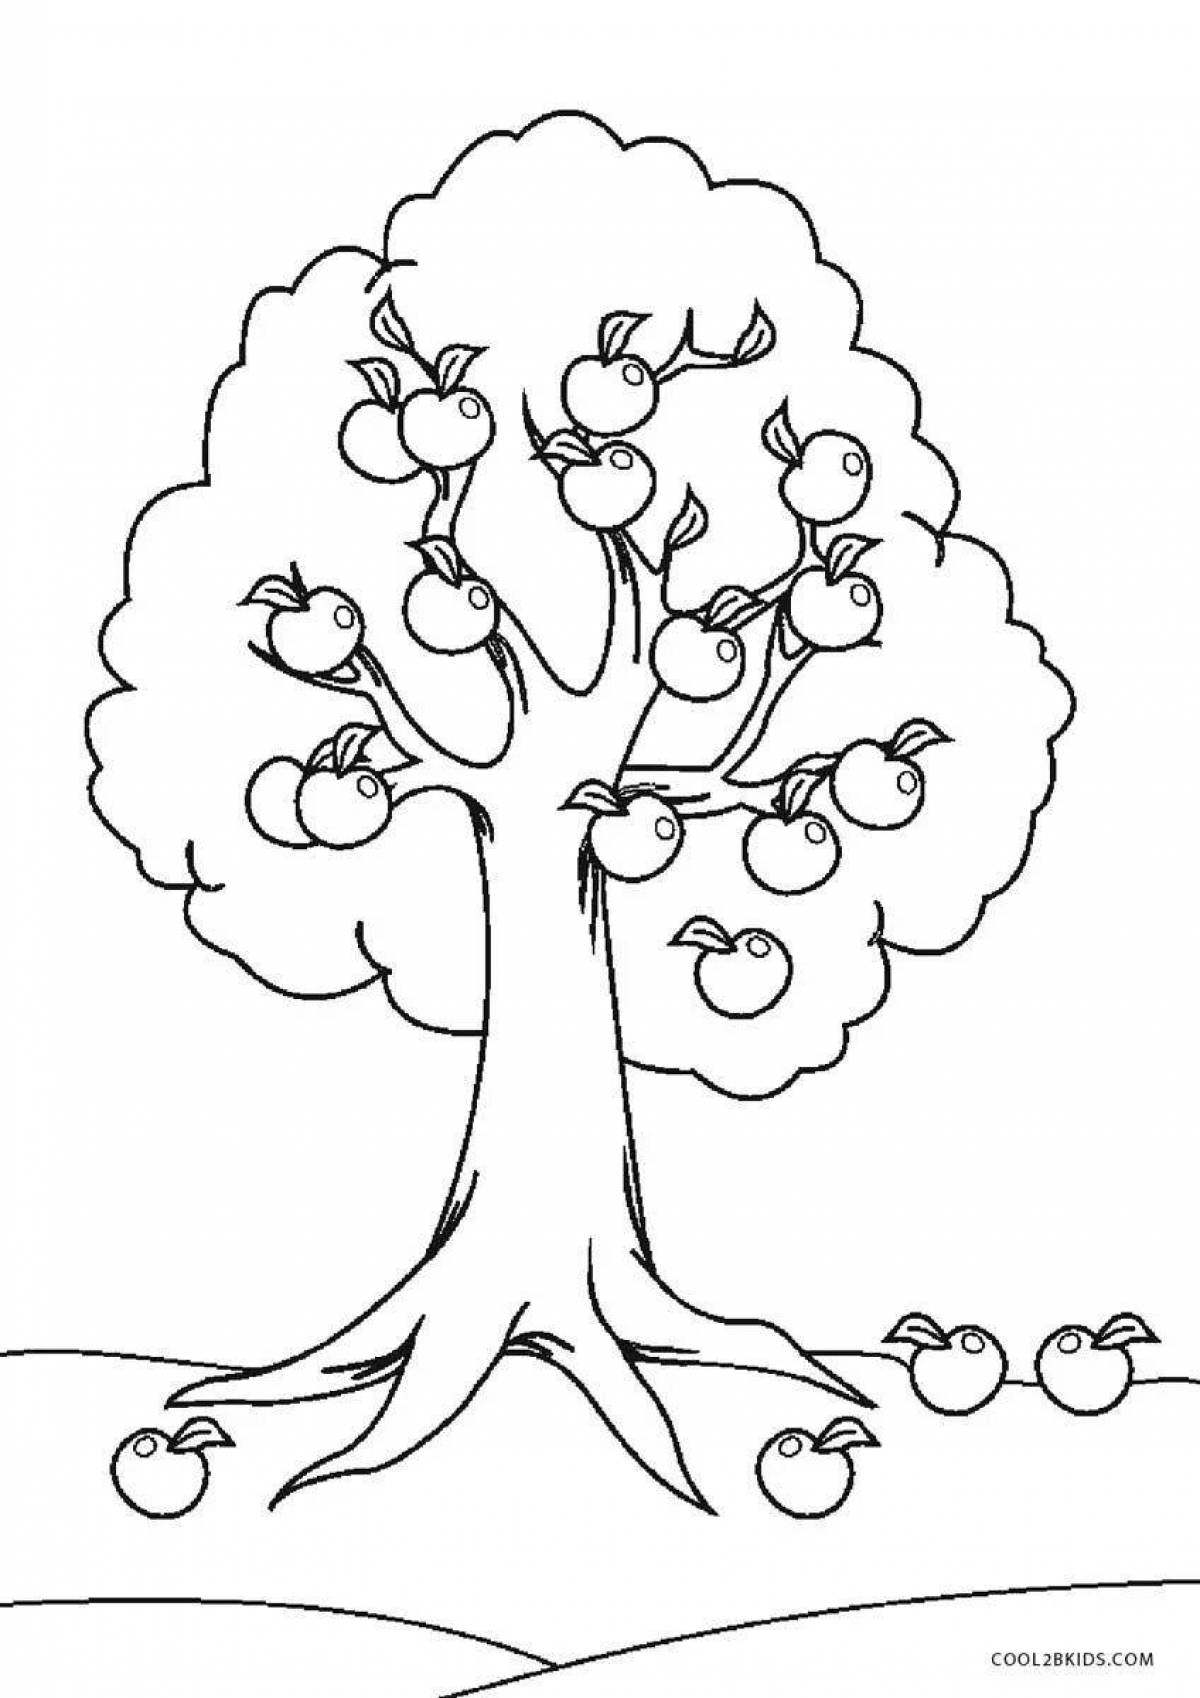 Apple tree #5